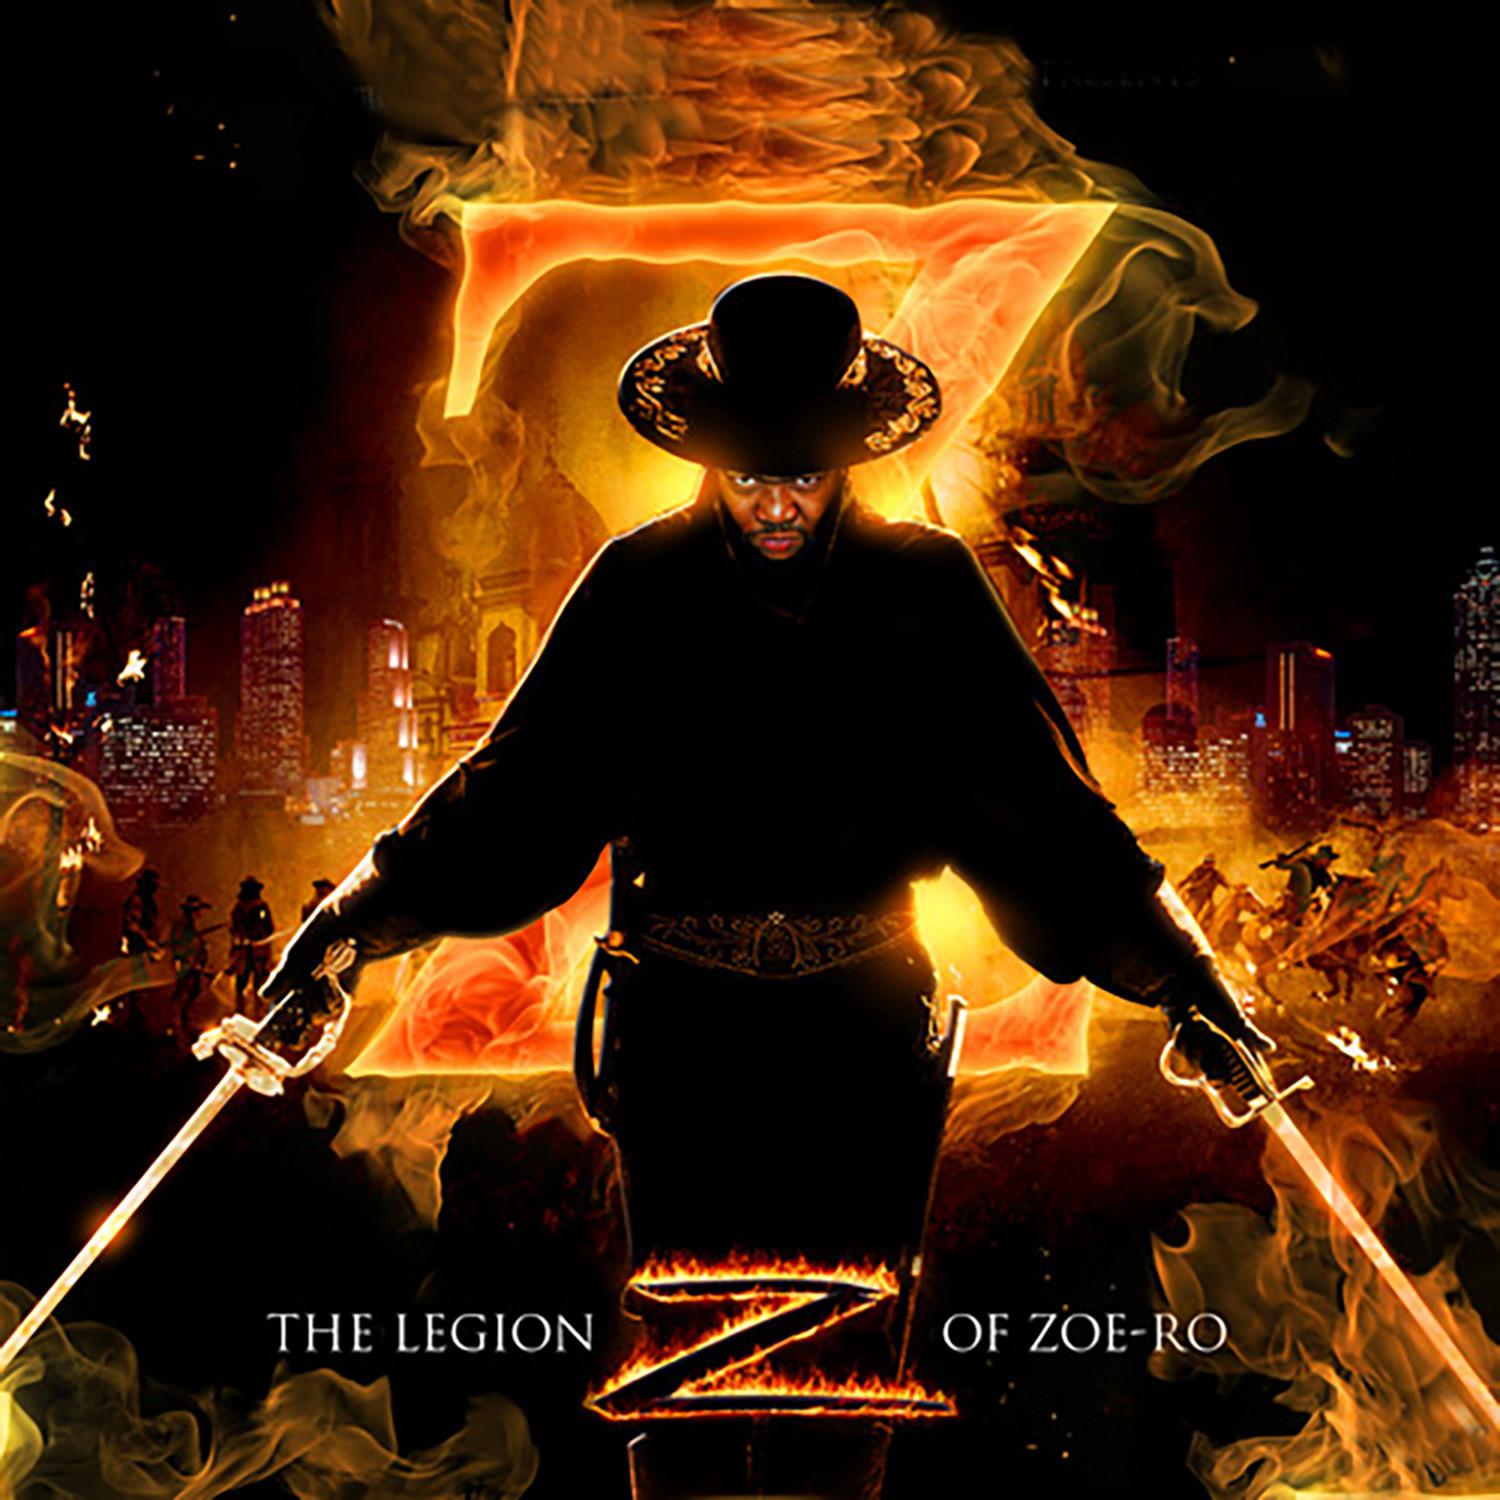 The Legion of Zoe-ro